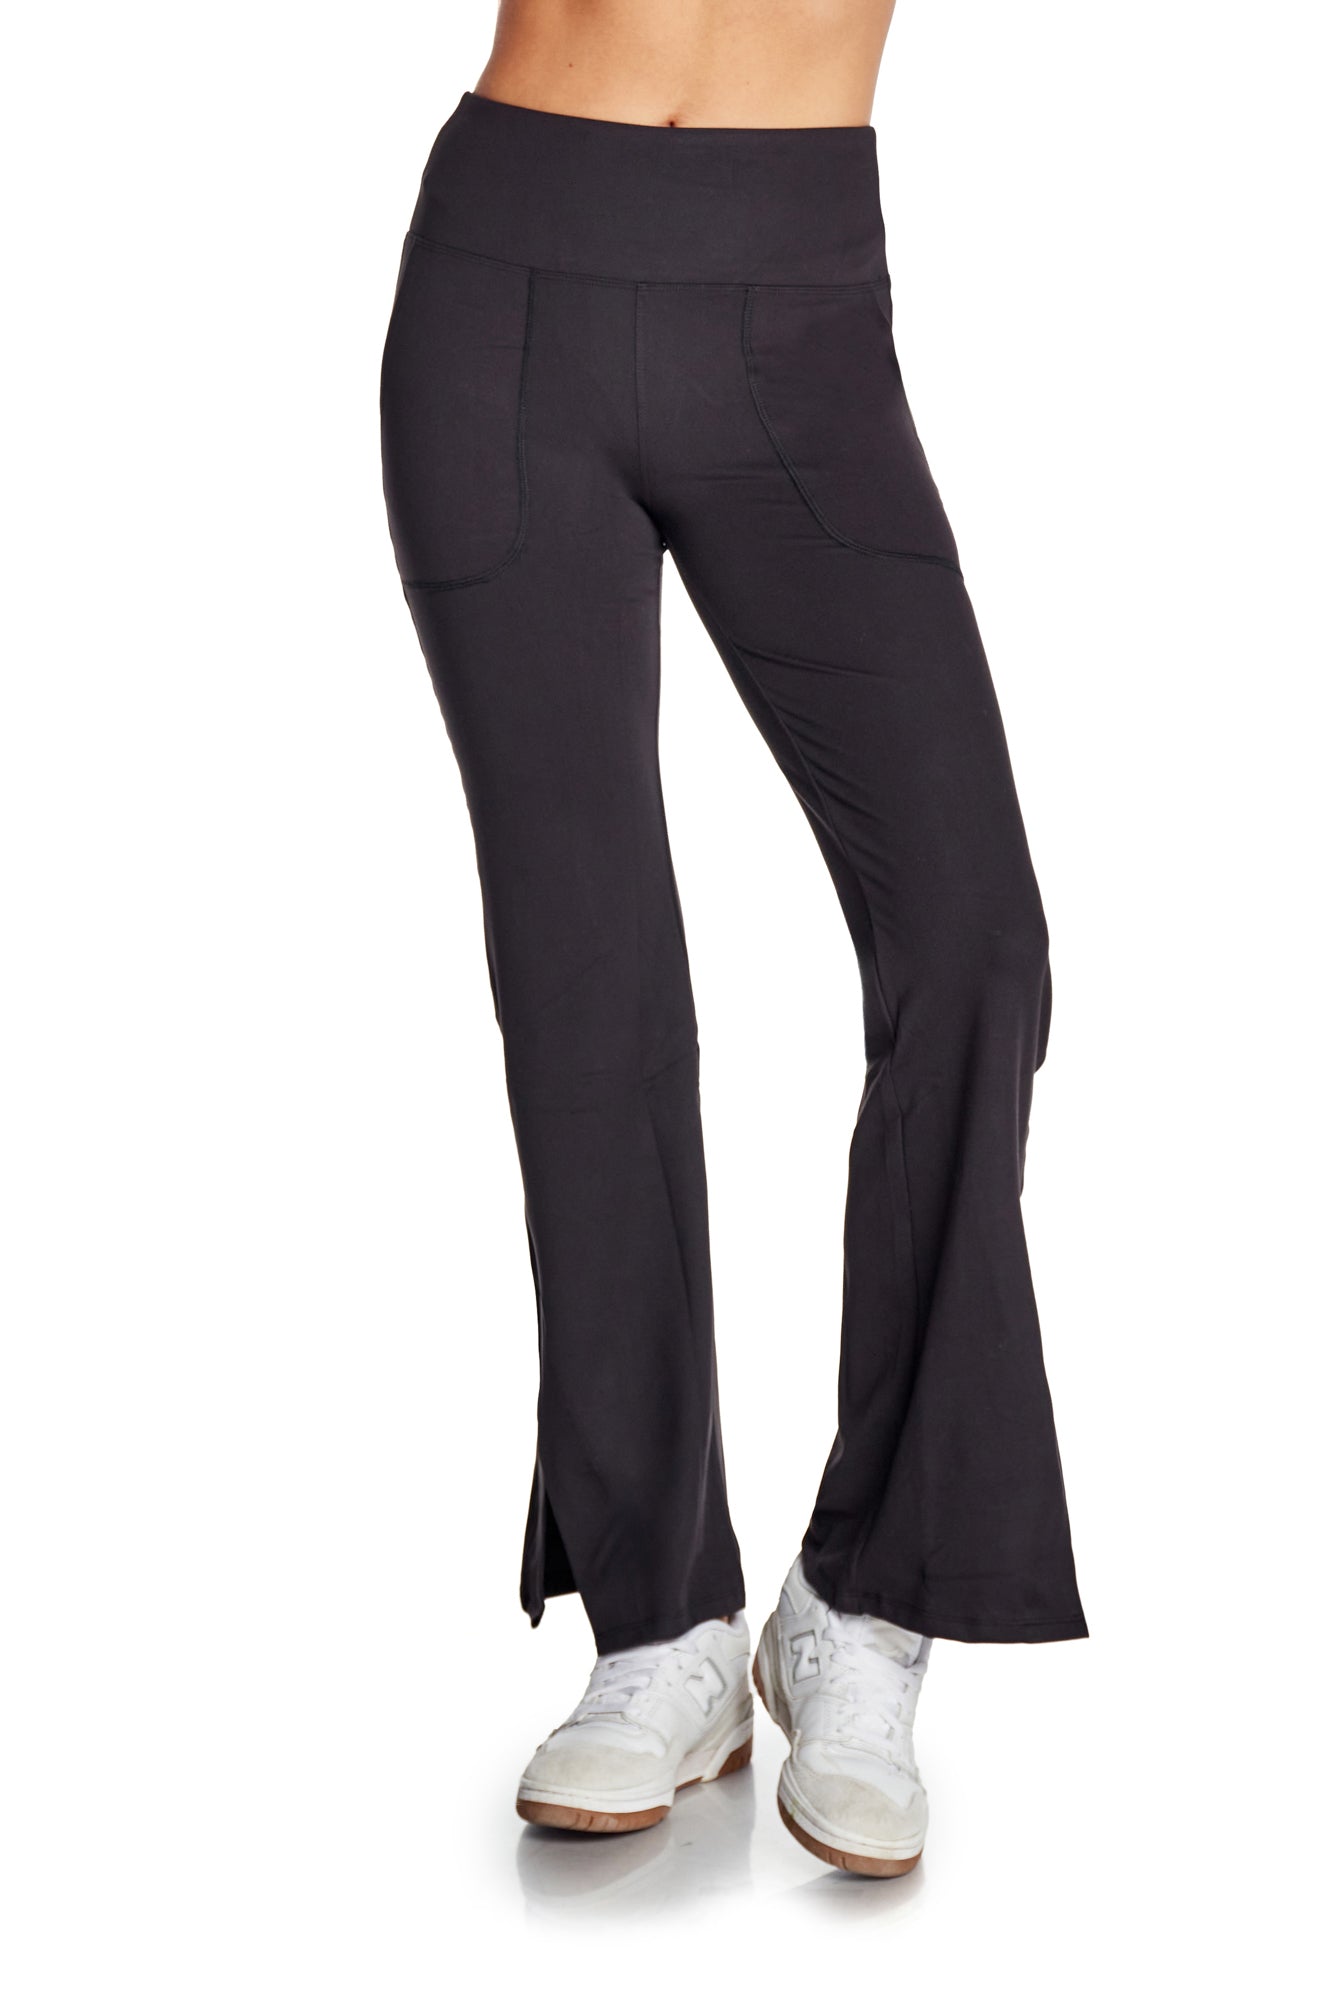 Dallonan Flare Yoga Pants Women Leggings Soft High Waisted Pants